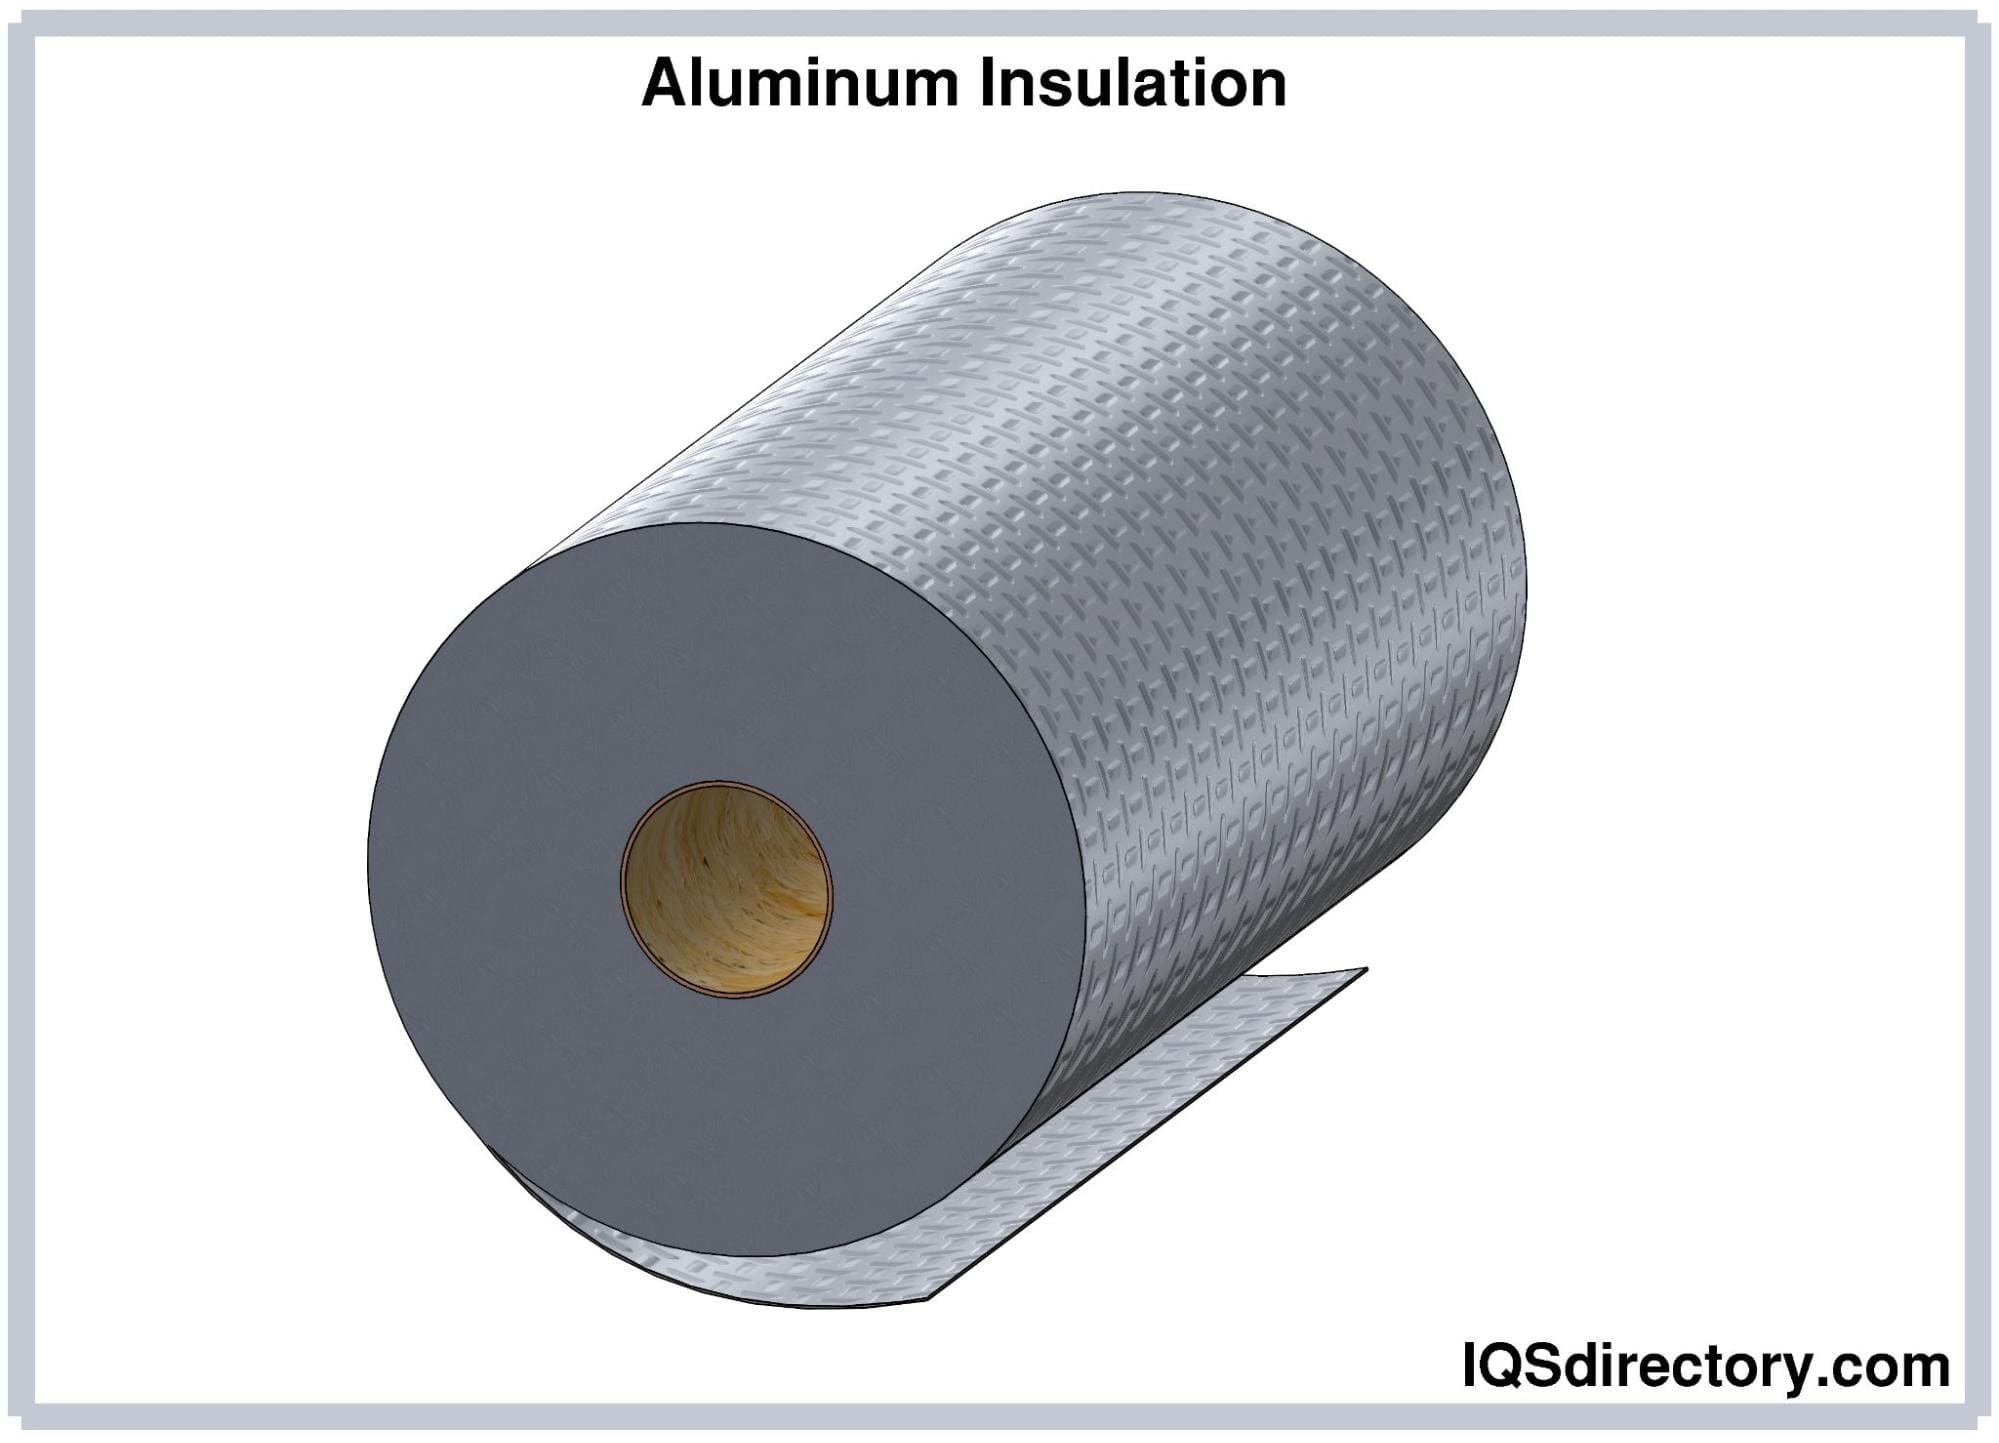 Aluminum Insulation